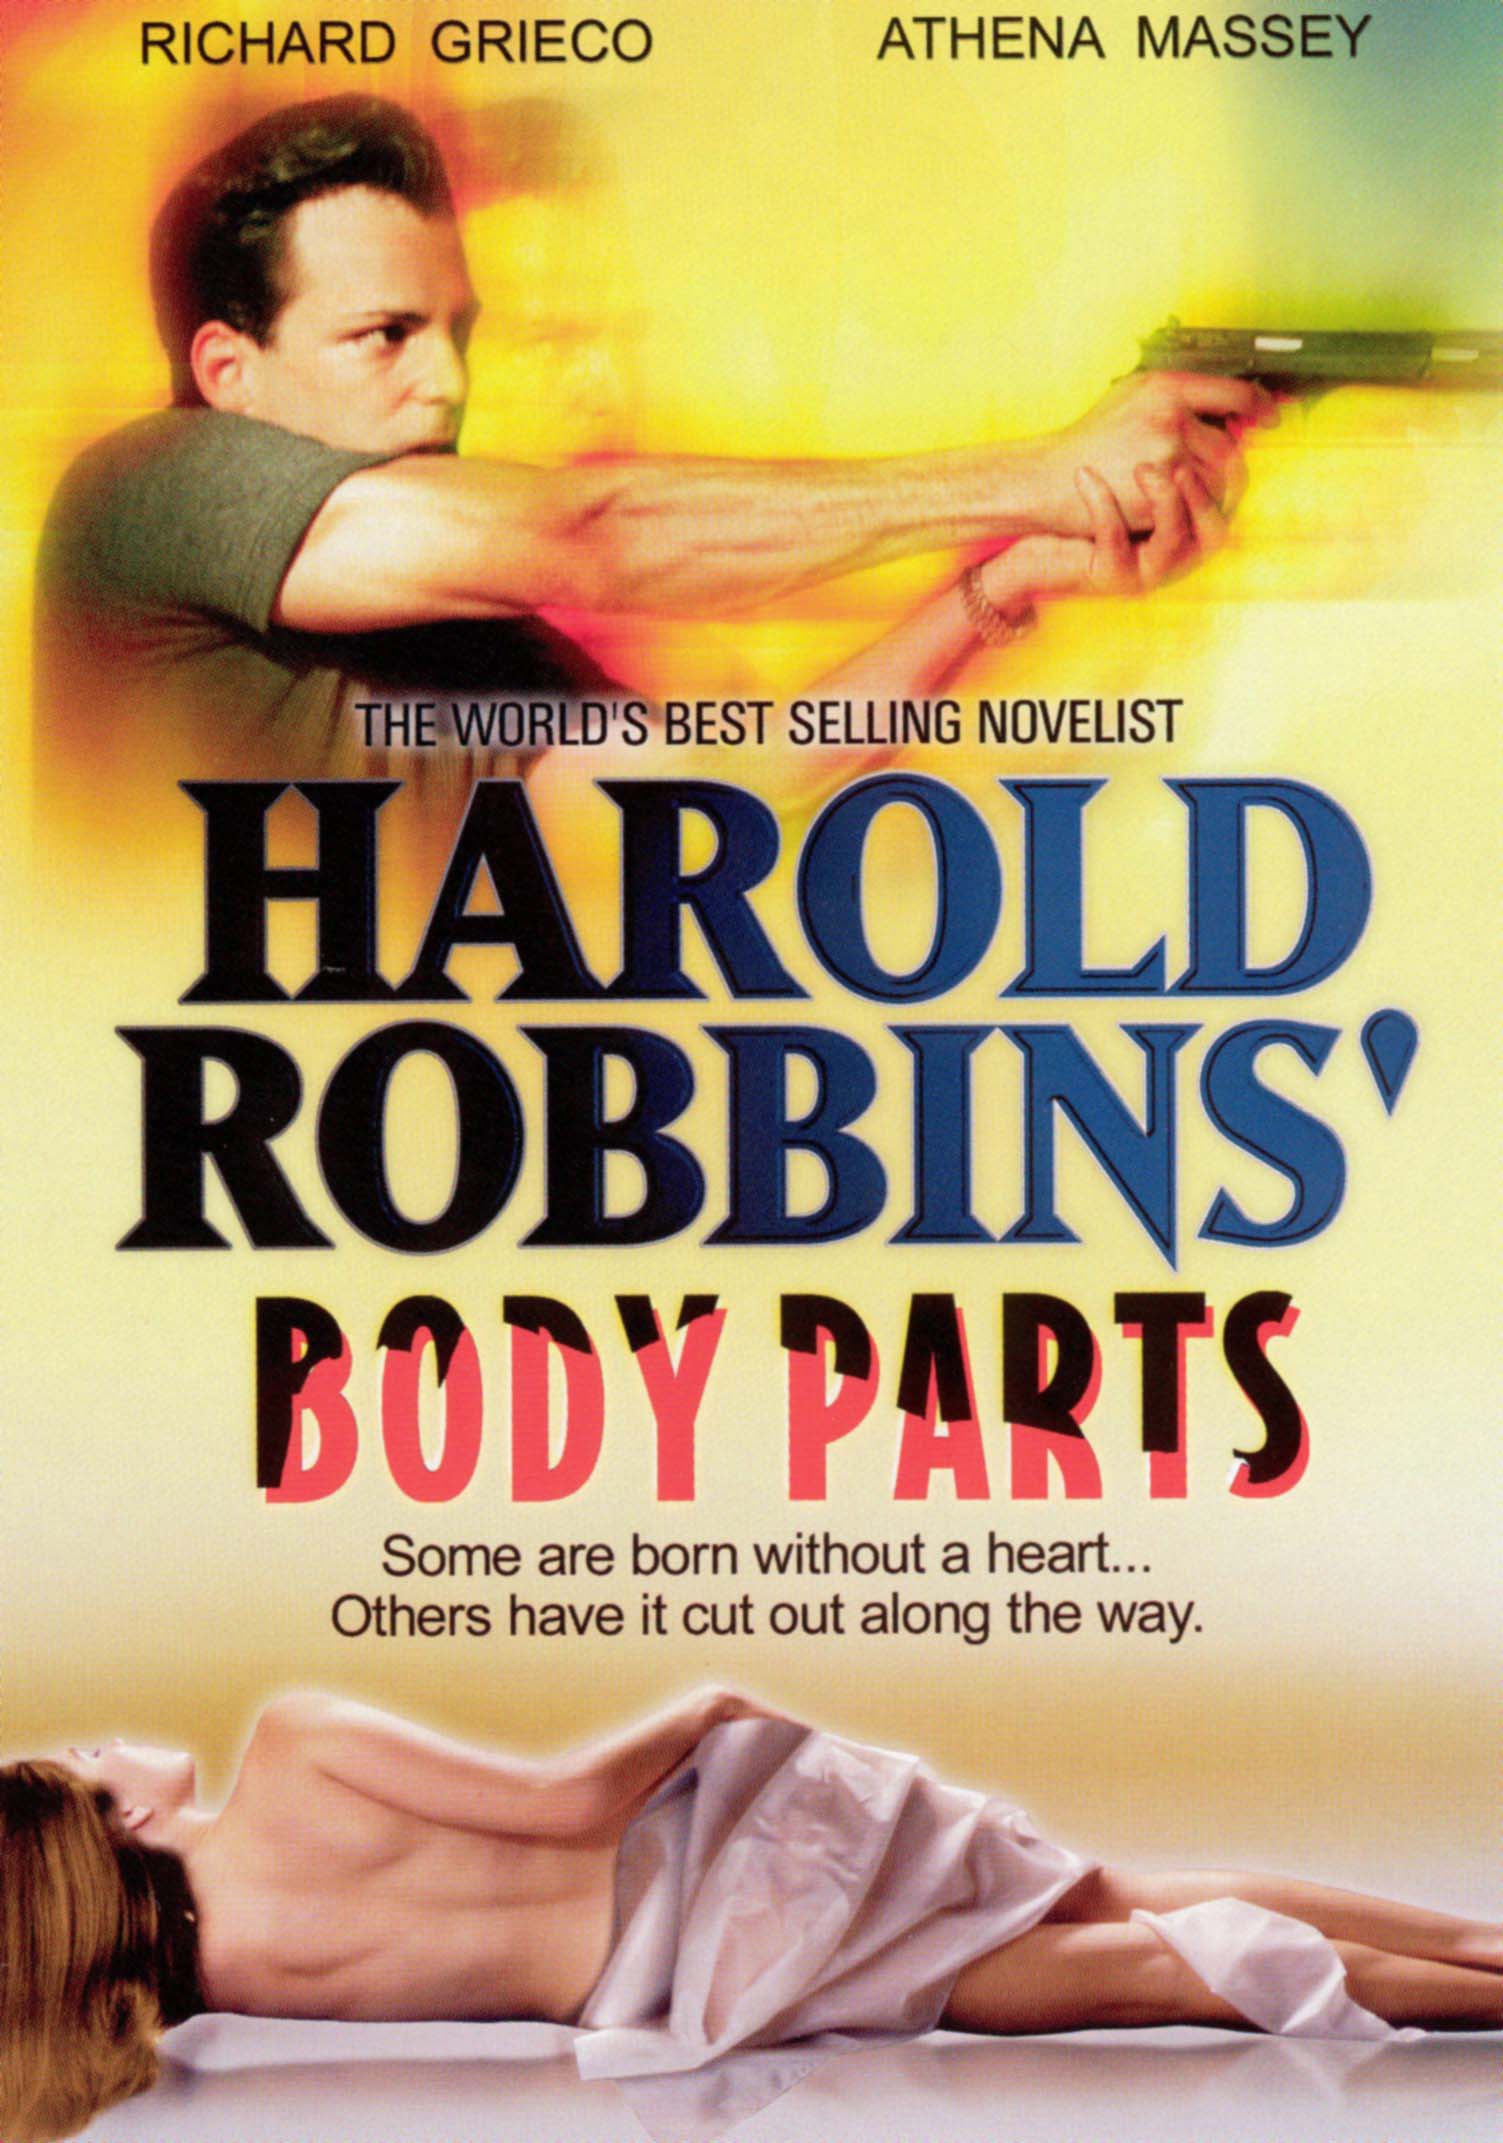 HAROLD ROBBINS' BODY PARTS DVD